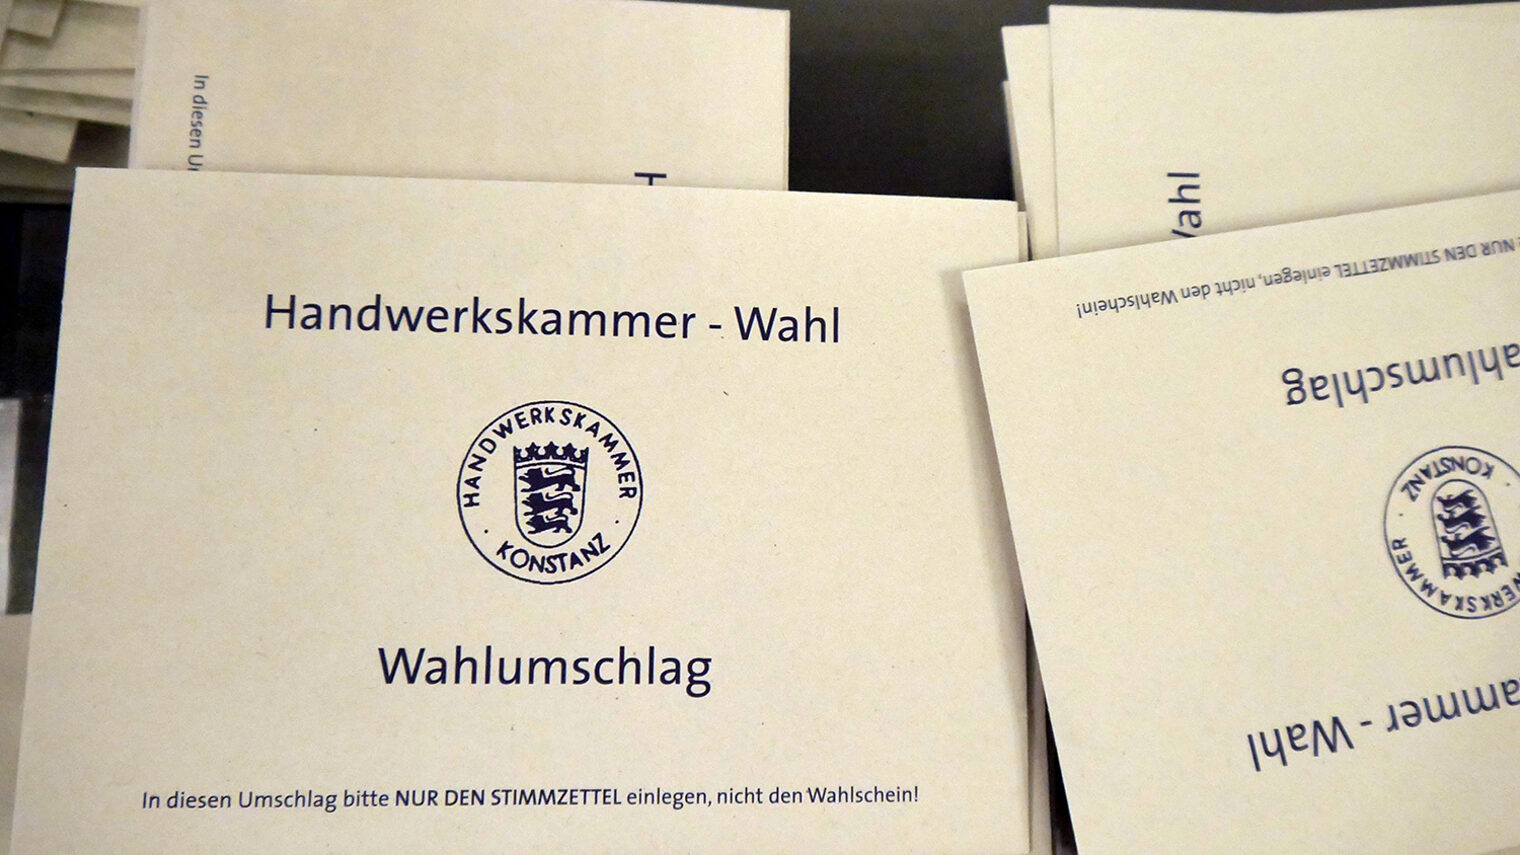 Stapel Briefumschläge mit Aufschrift Handwerkskammer-Wahl, Wahlumschlag